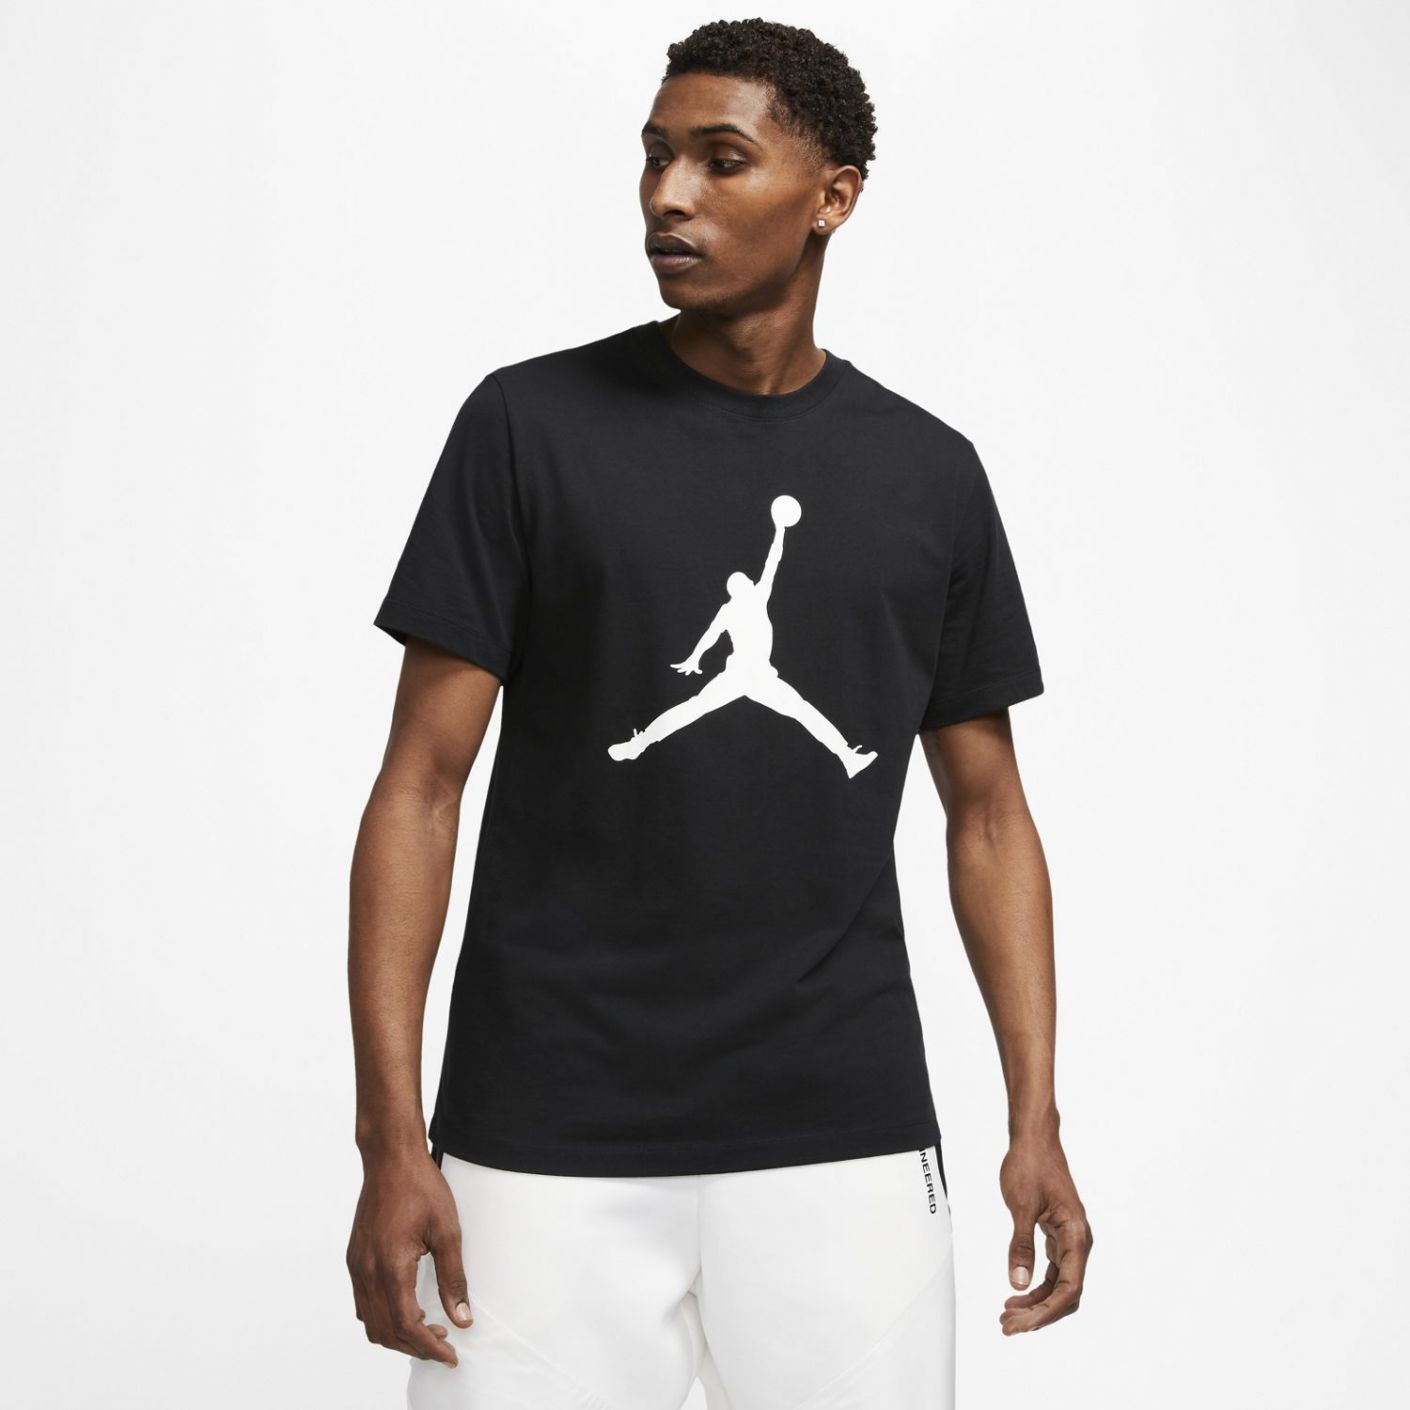 Jordan Jumpman T-Shirt CJ0921-011